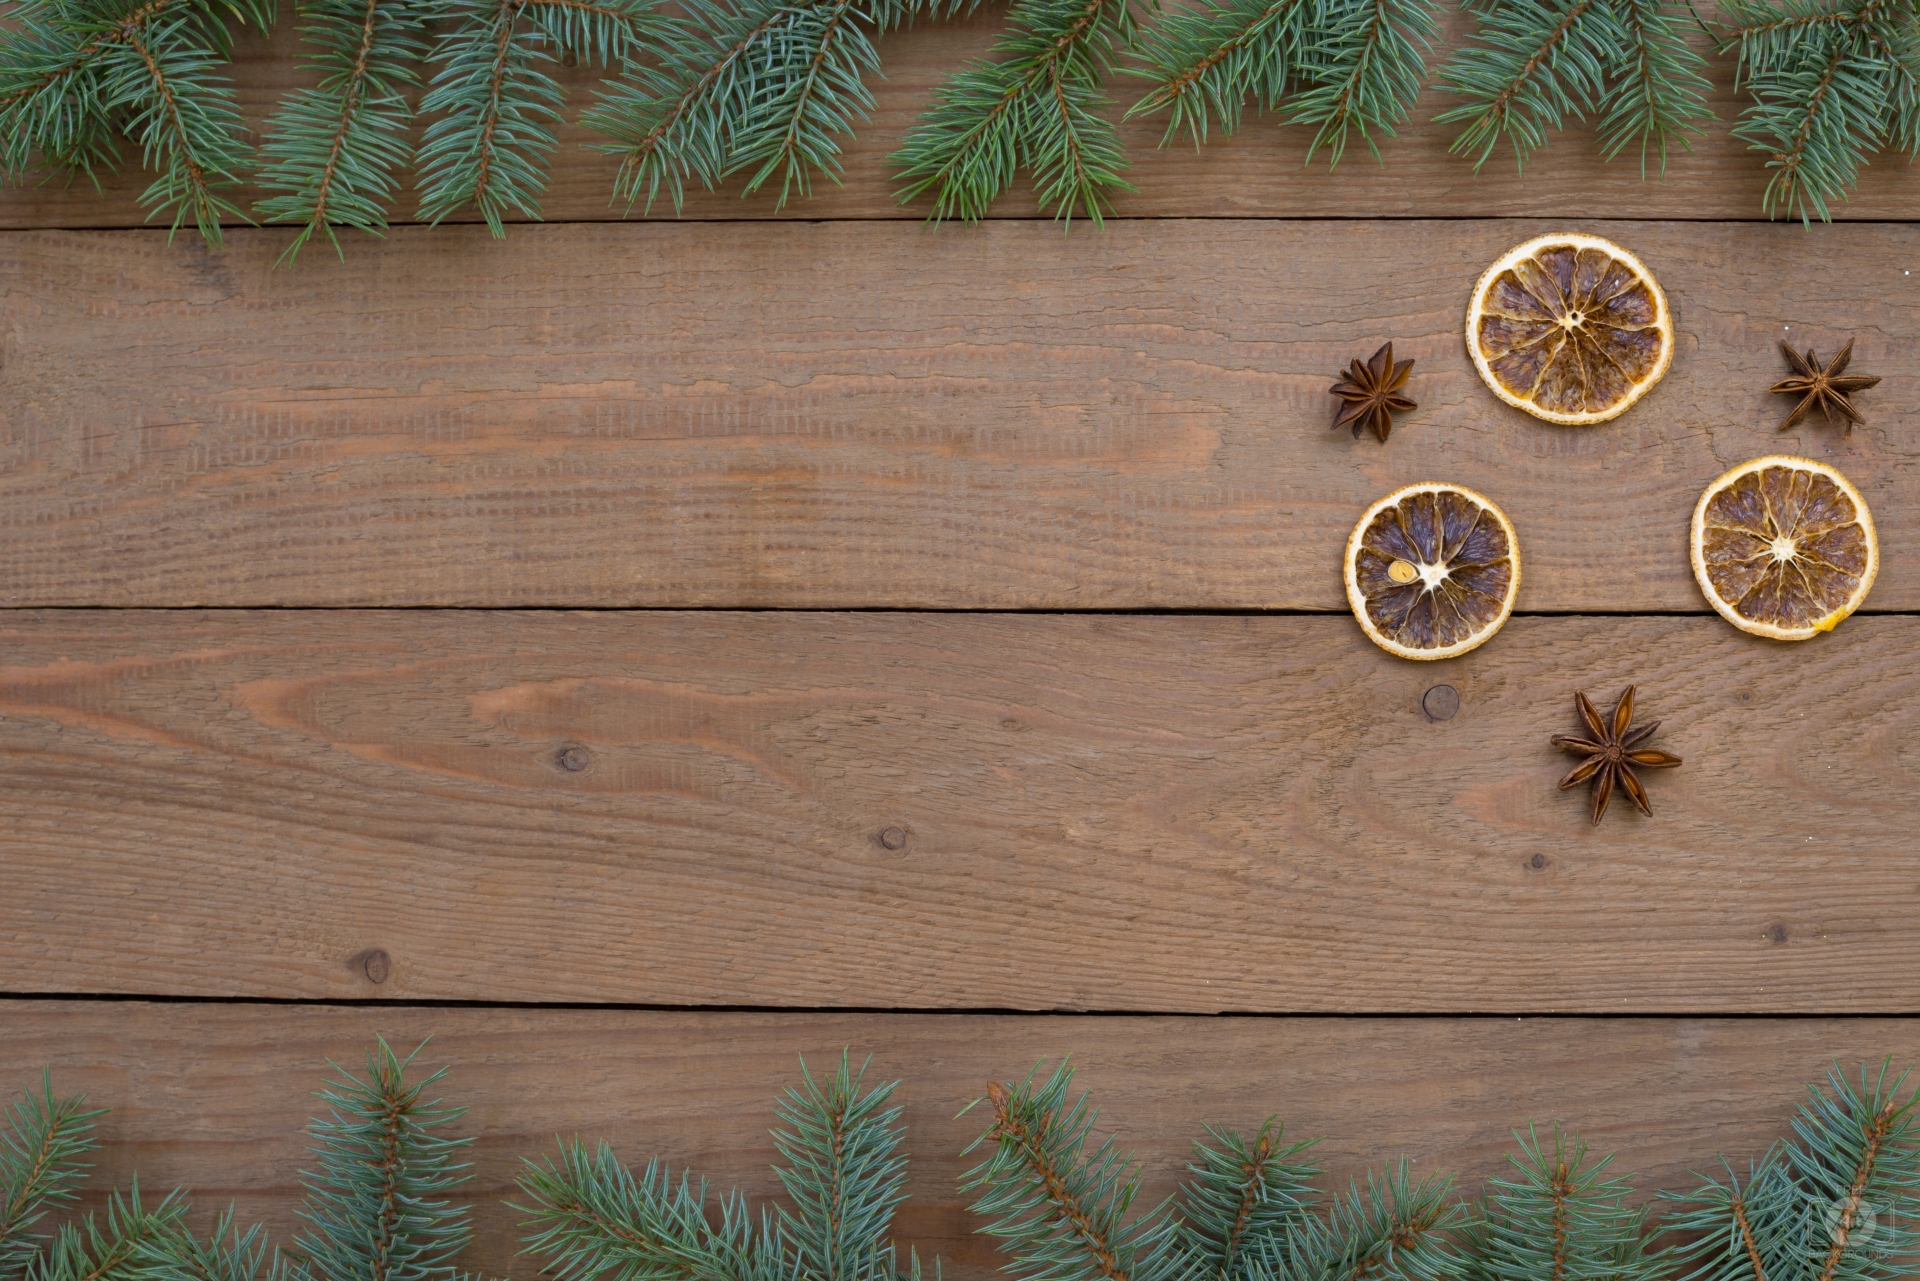 Tuyệt vời cho tiết trời Giáng Sinh, hình nền gỗ tạo nên một không khí ấm áp và đầy phong cách cho không gian của bạn. Với các họa tiết giả mạo hoặc tự nhiên, tạo nên một sự kết hợp tuyệt vời cho bất kỳ thiết kế nội thất. Hãy thêm sự ấn tượng vào thiết kế cho mùa Giáng Sinh với các hình ảnh liên quan đến hình nền gỗ này nhé!